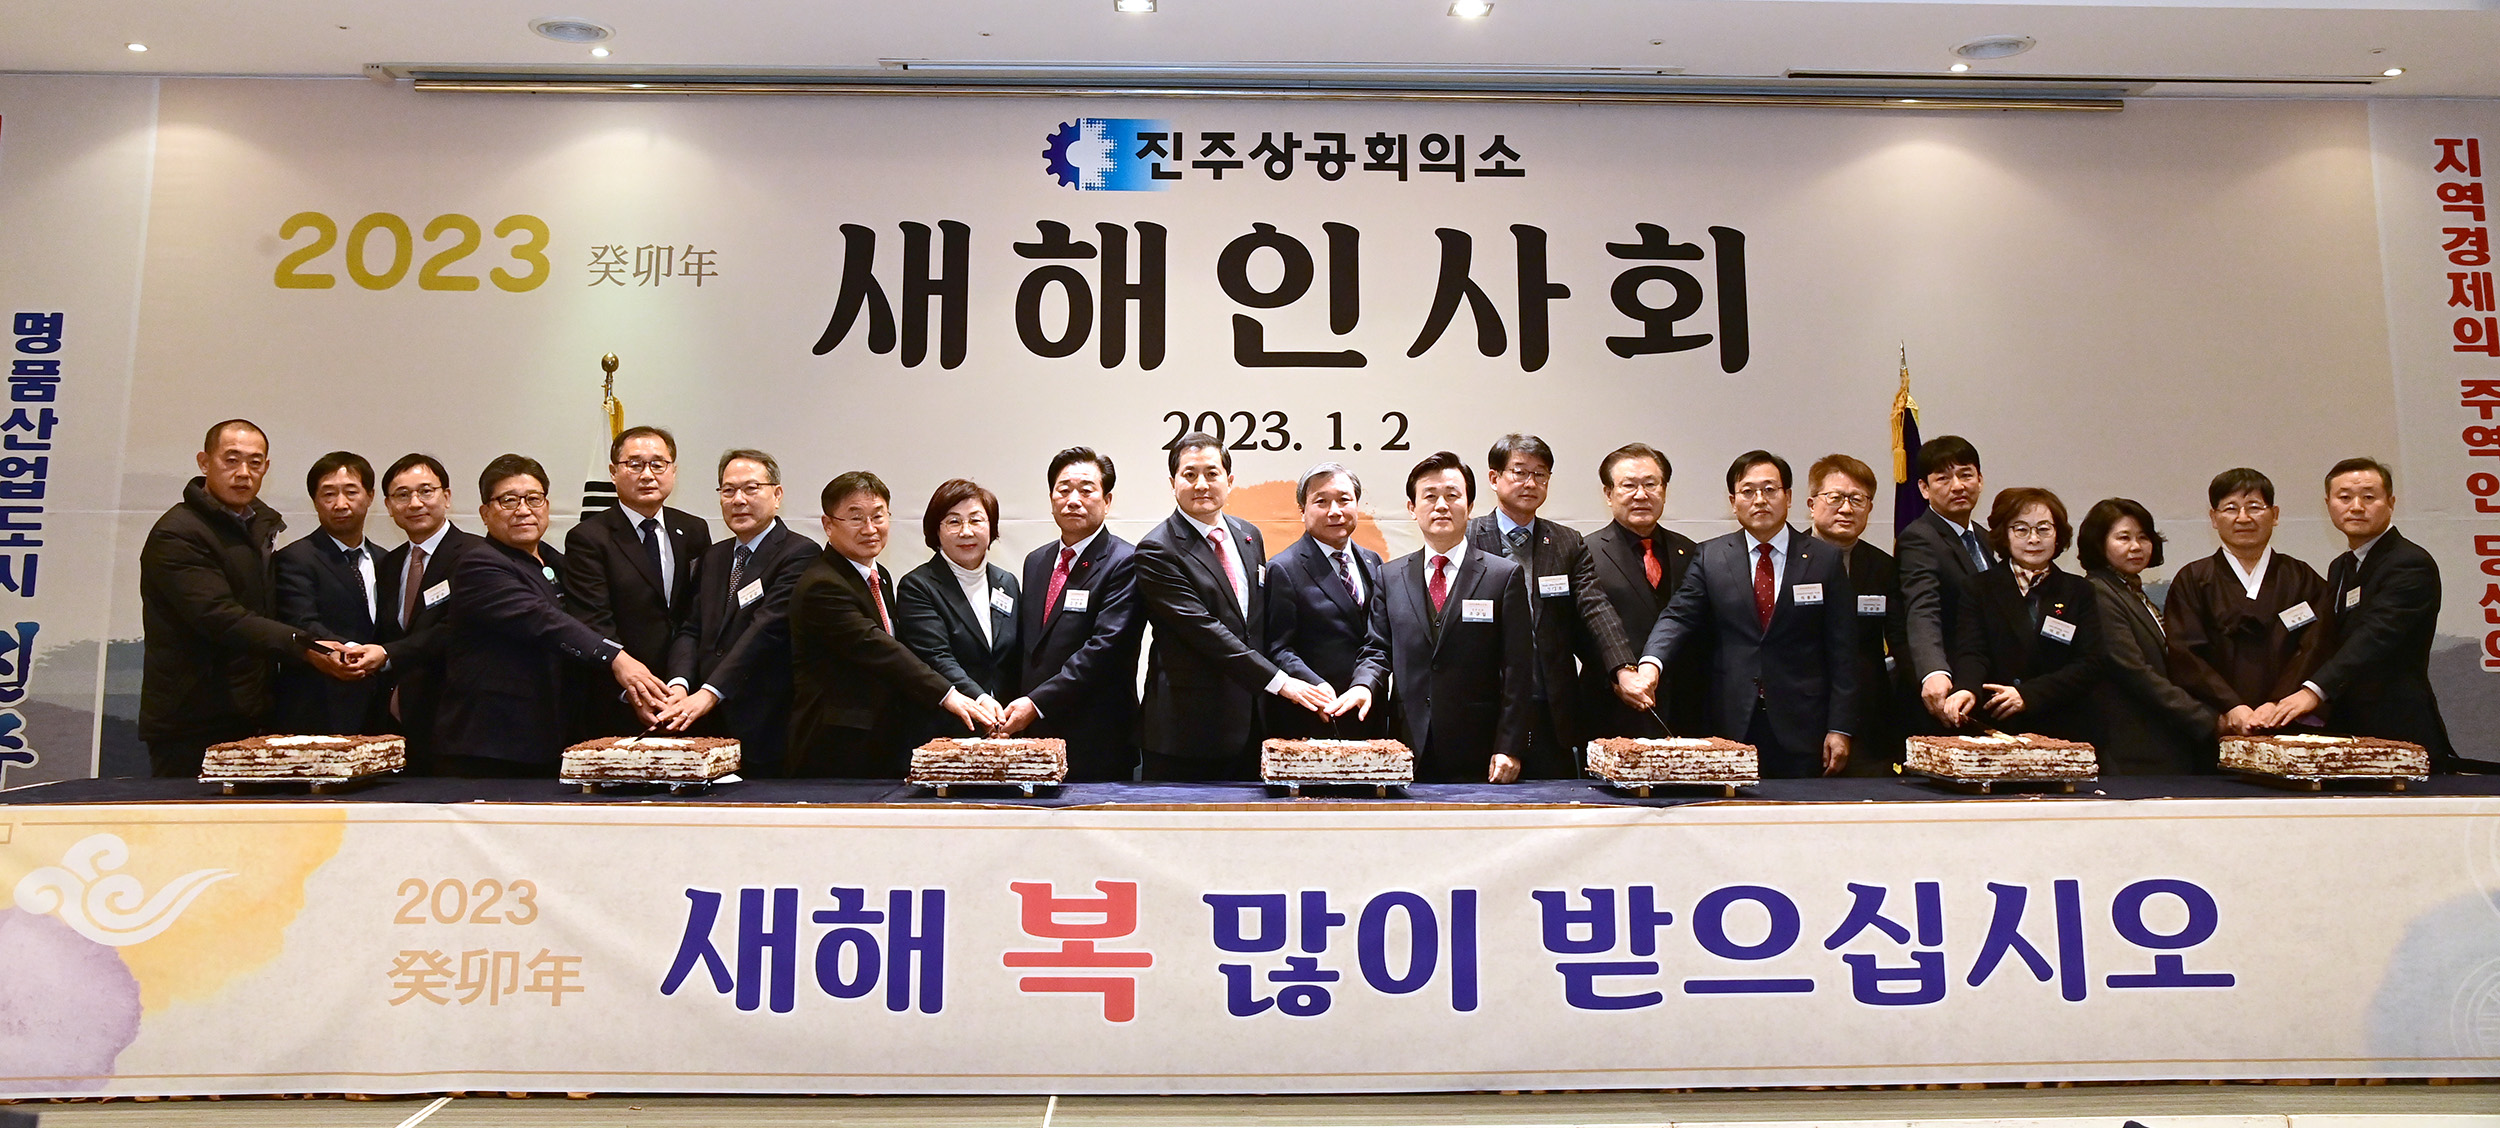 진주상공회의소, 2023 새해인사회 개최